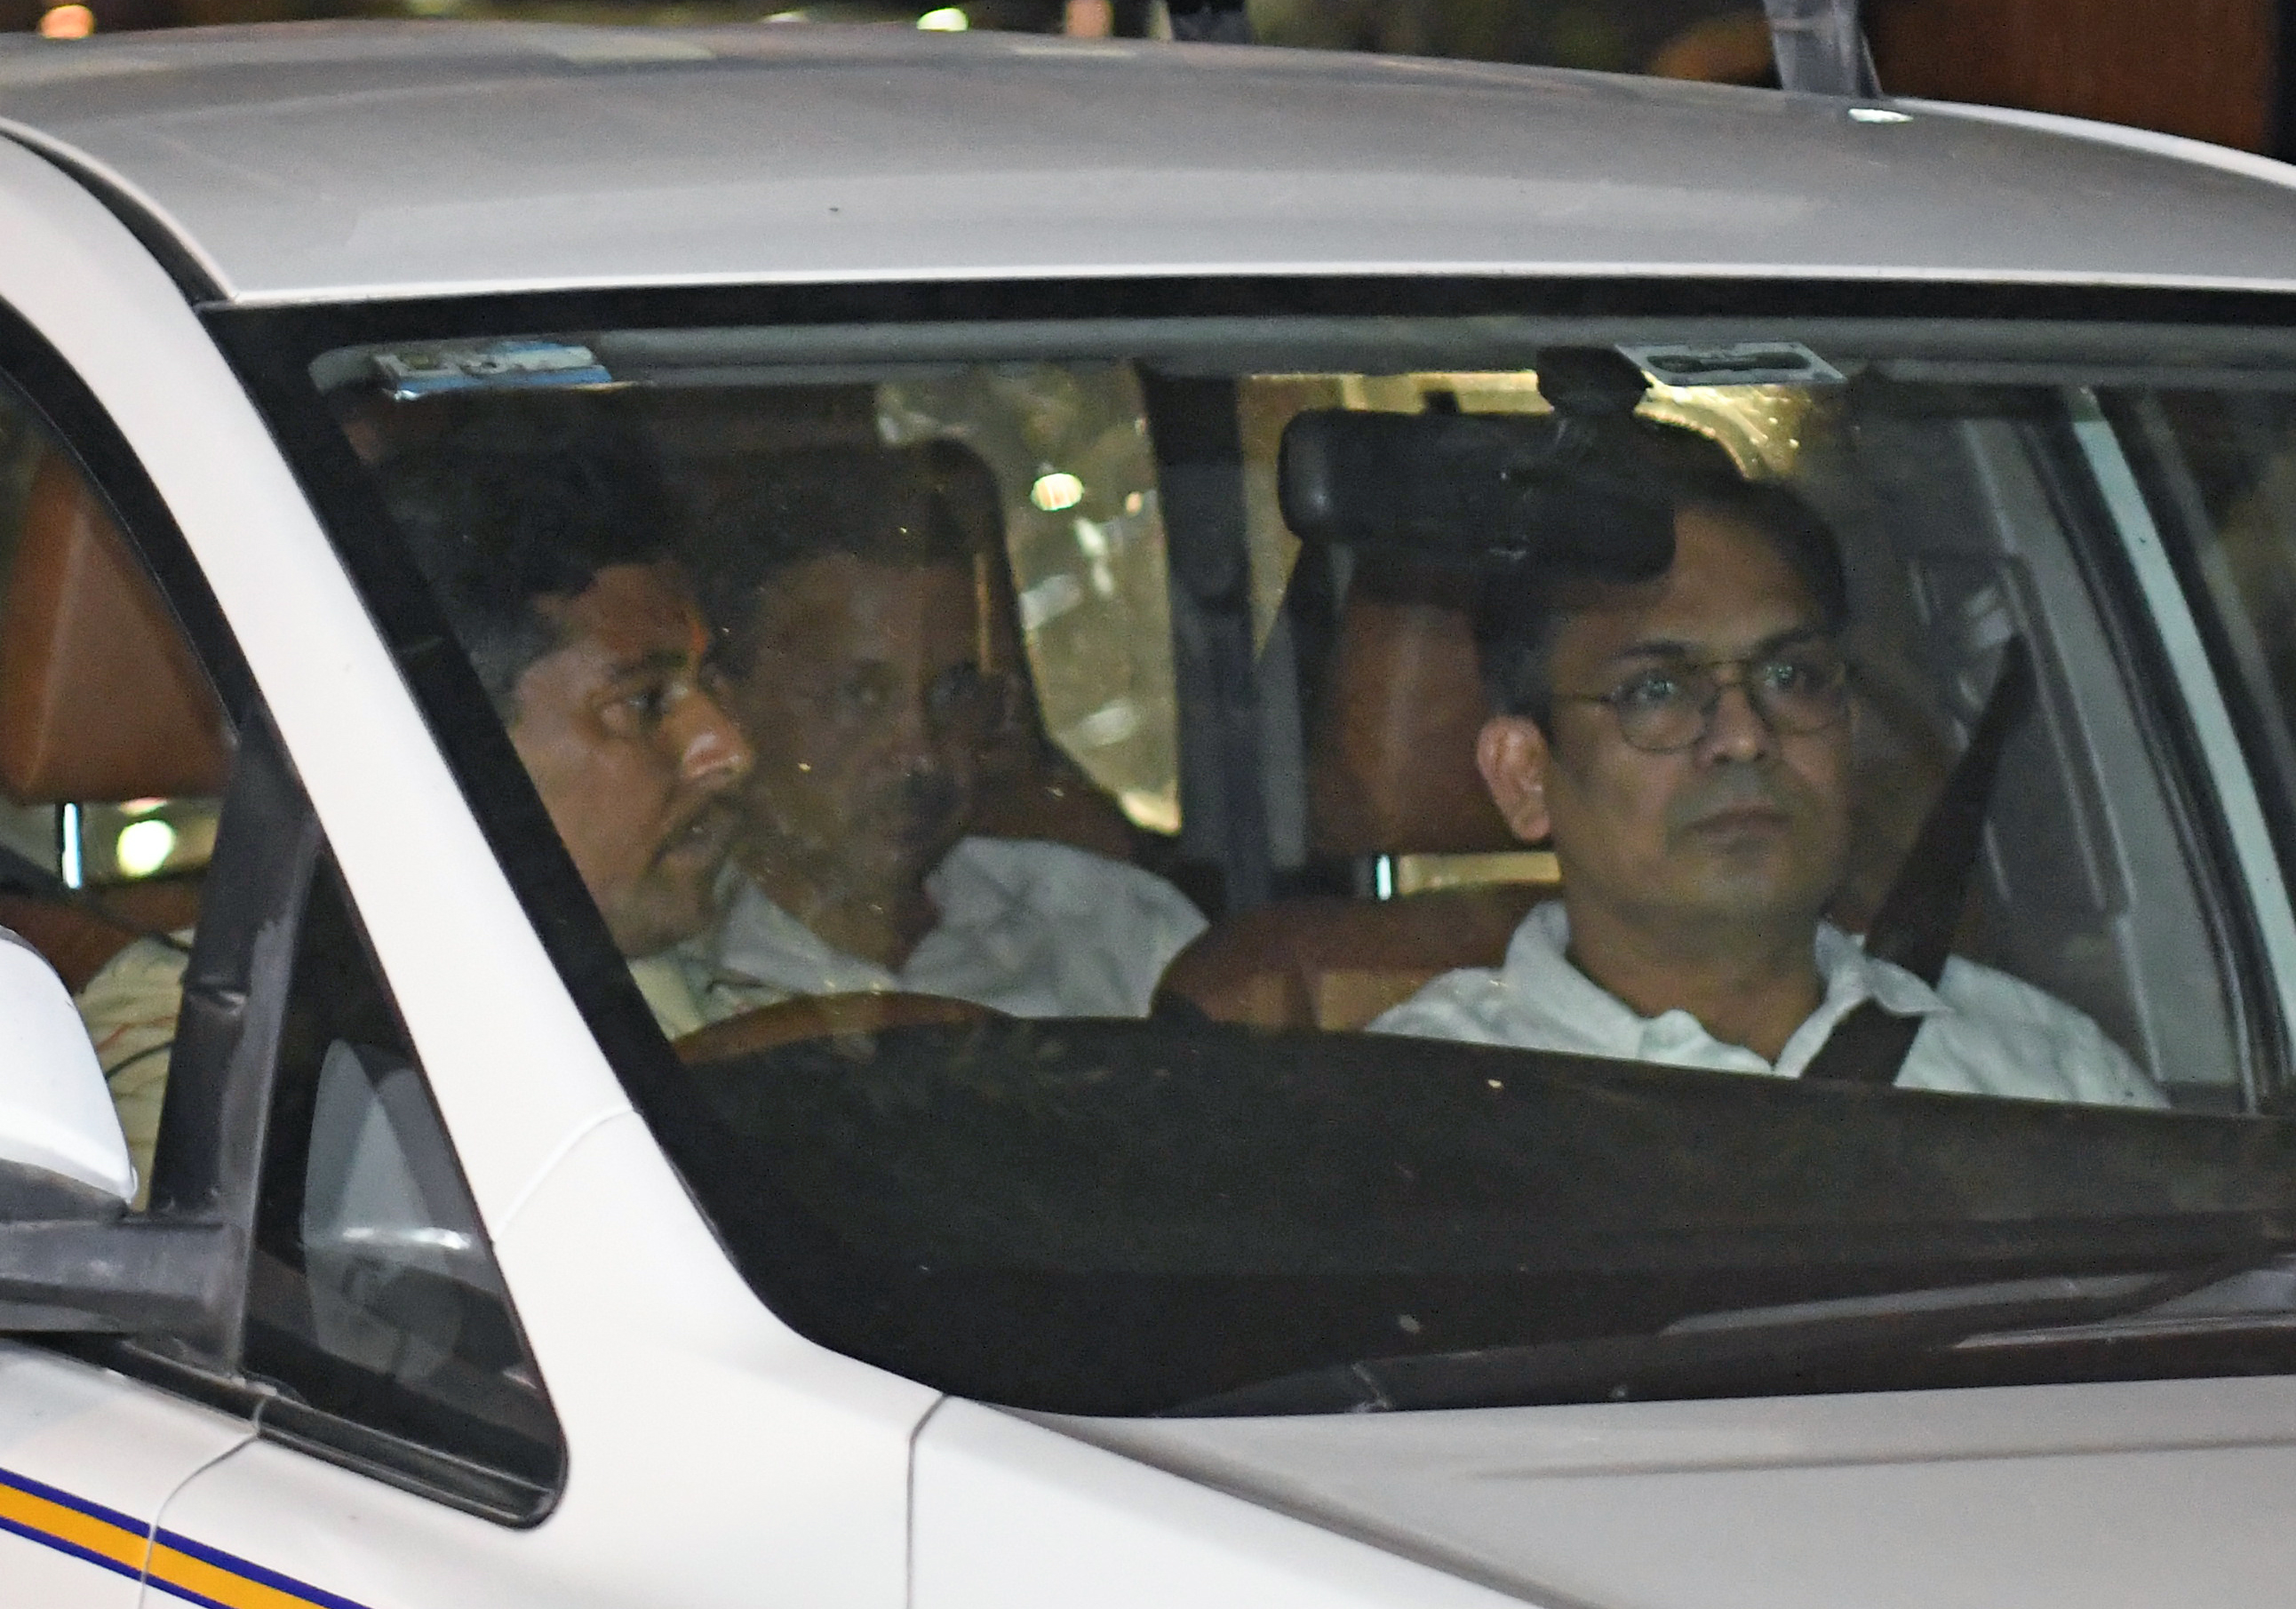 Arvind Kejriwal Under Arrest: Politics Before Elections or Justice for Corruption?